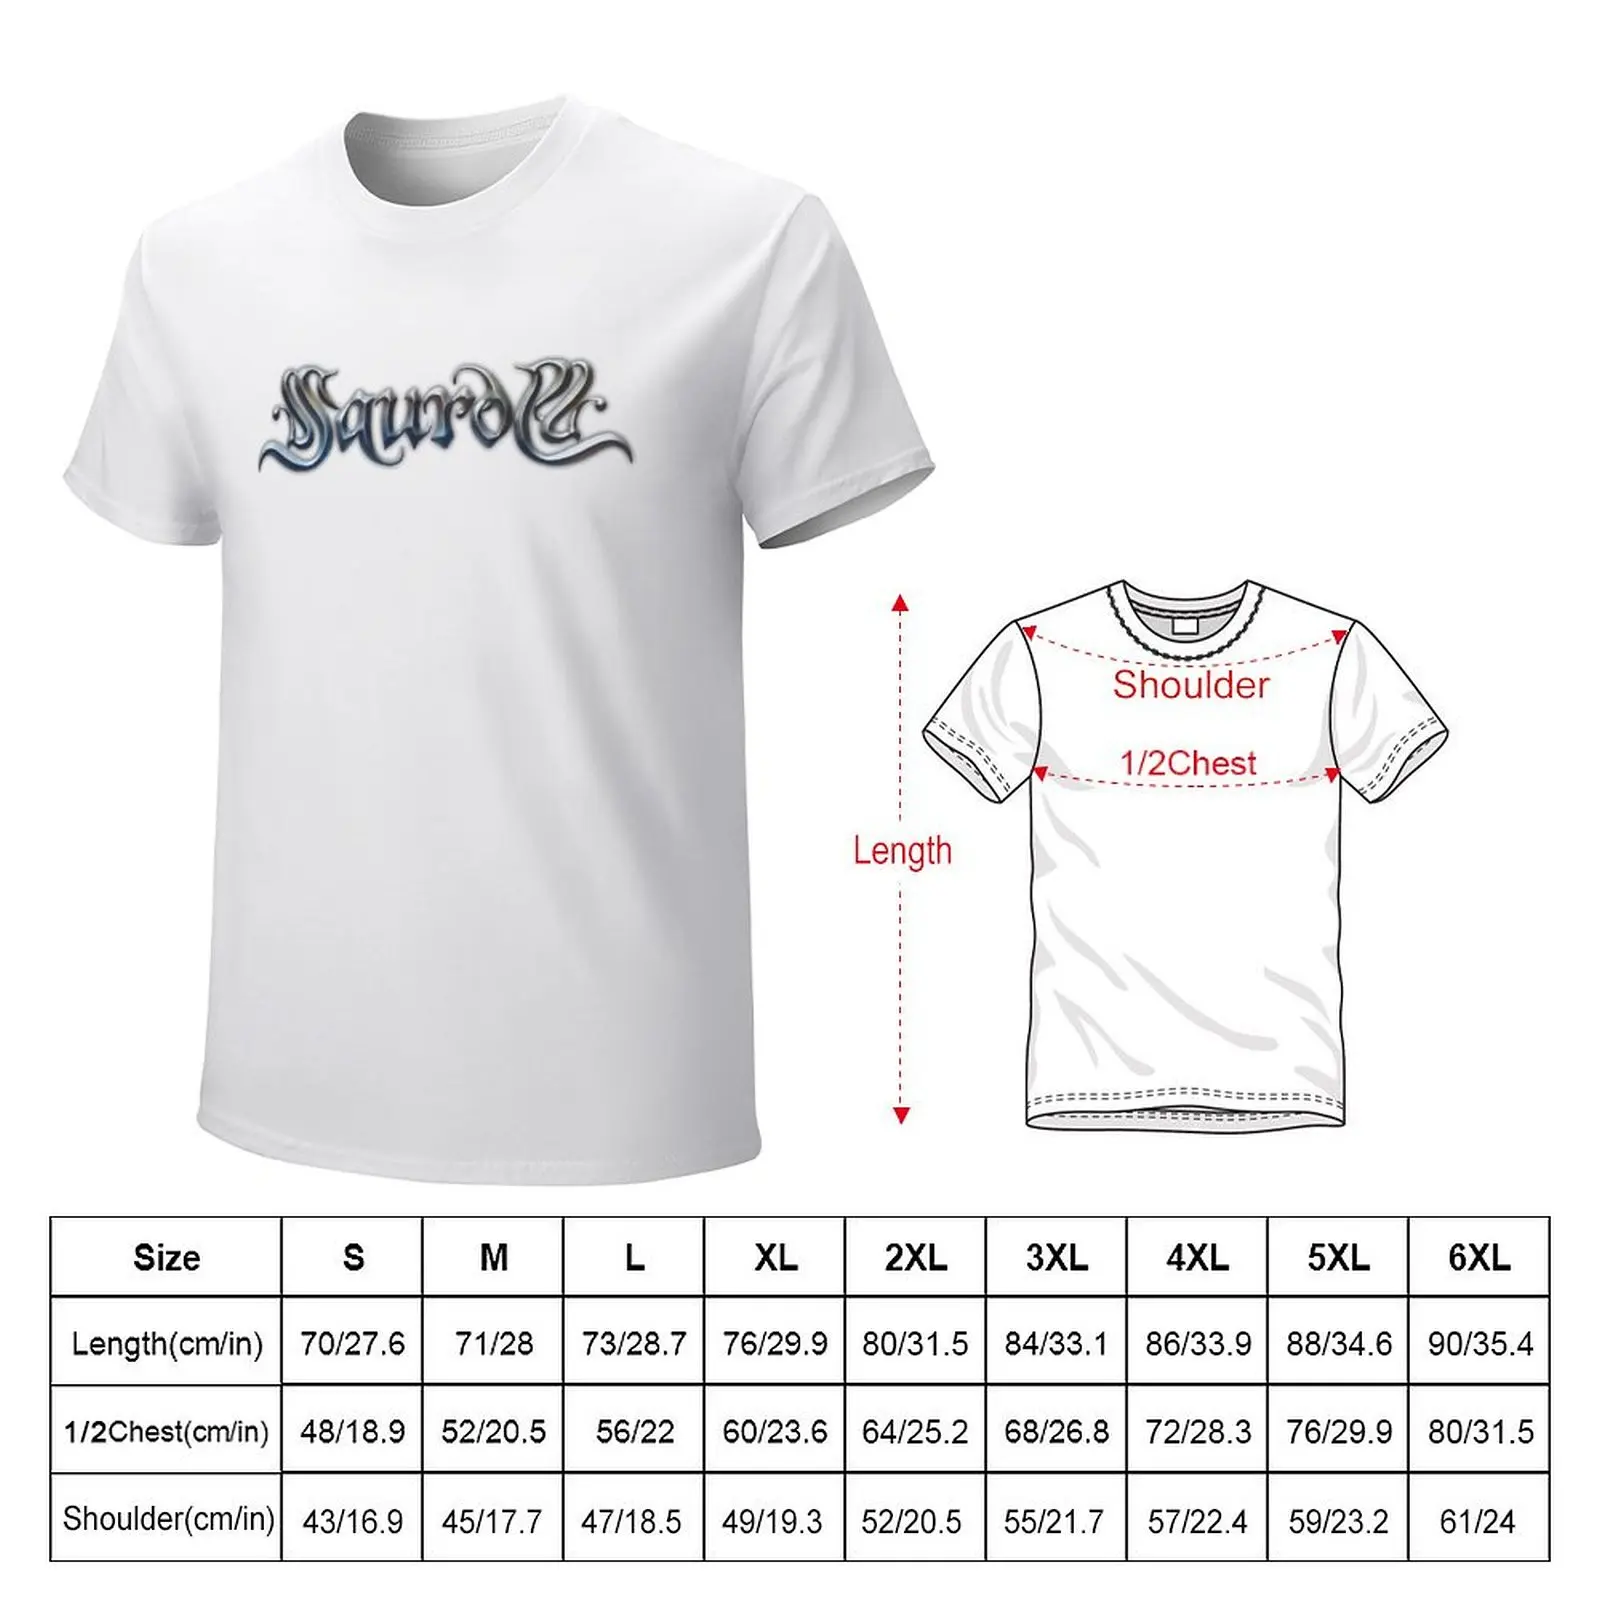 Saurom-Camiseta de Rock Band española para hombre, ropa estética de gran tamaño, camisetas grandes y altas